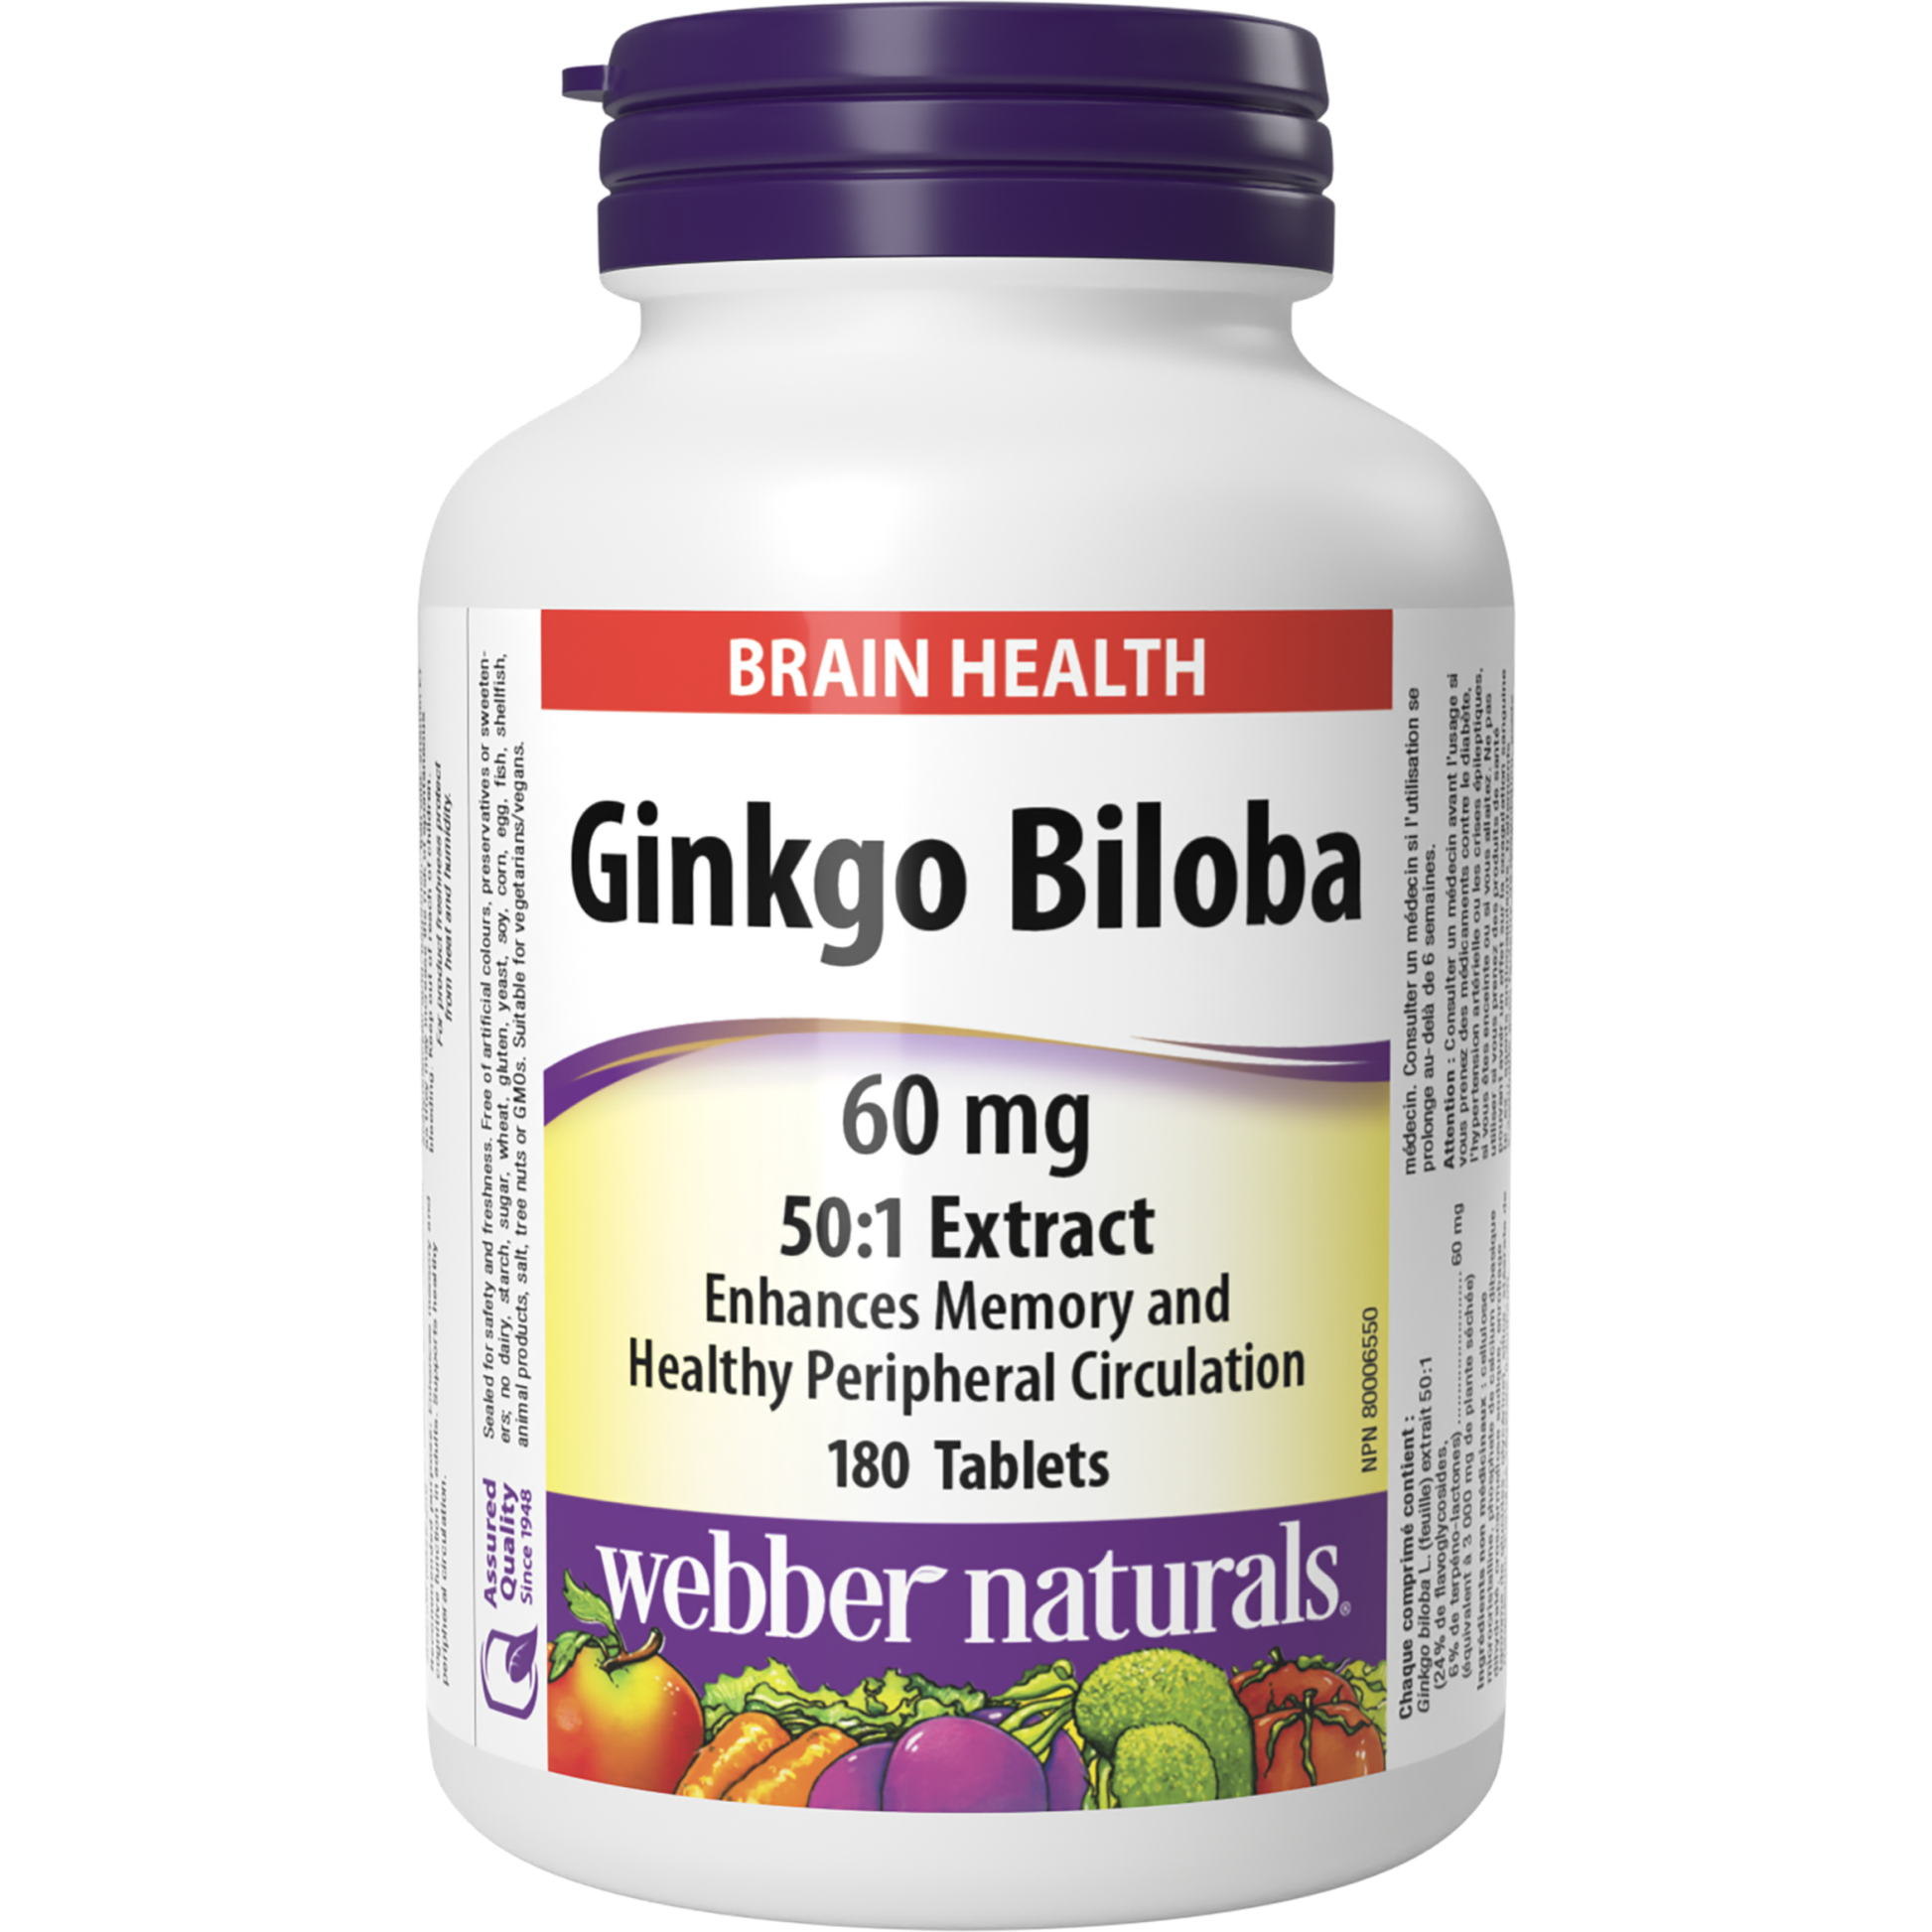 Ginkgo Biloba 60 mg for Webber Naturals|v|hi-res|WN5056